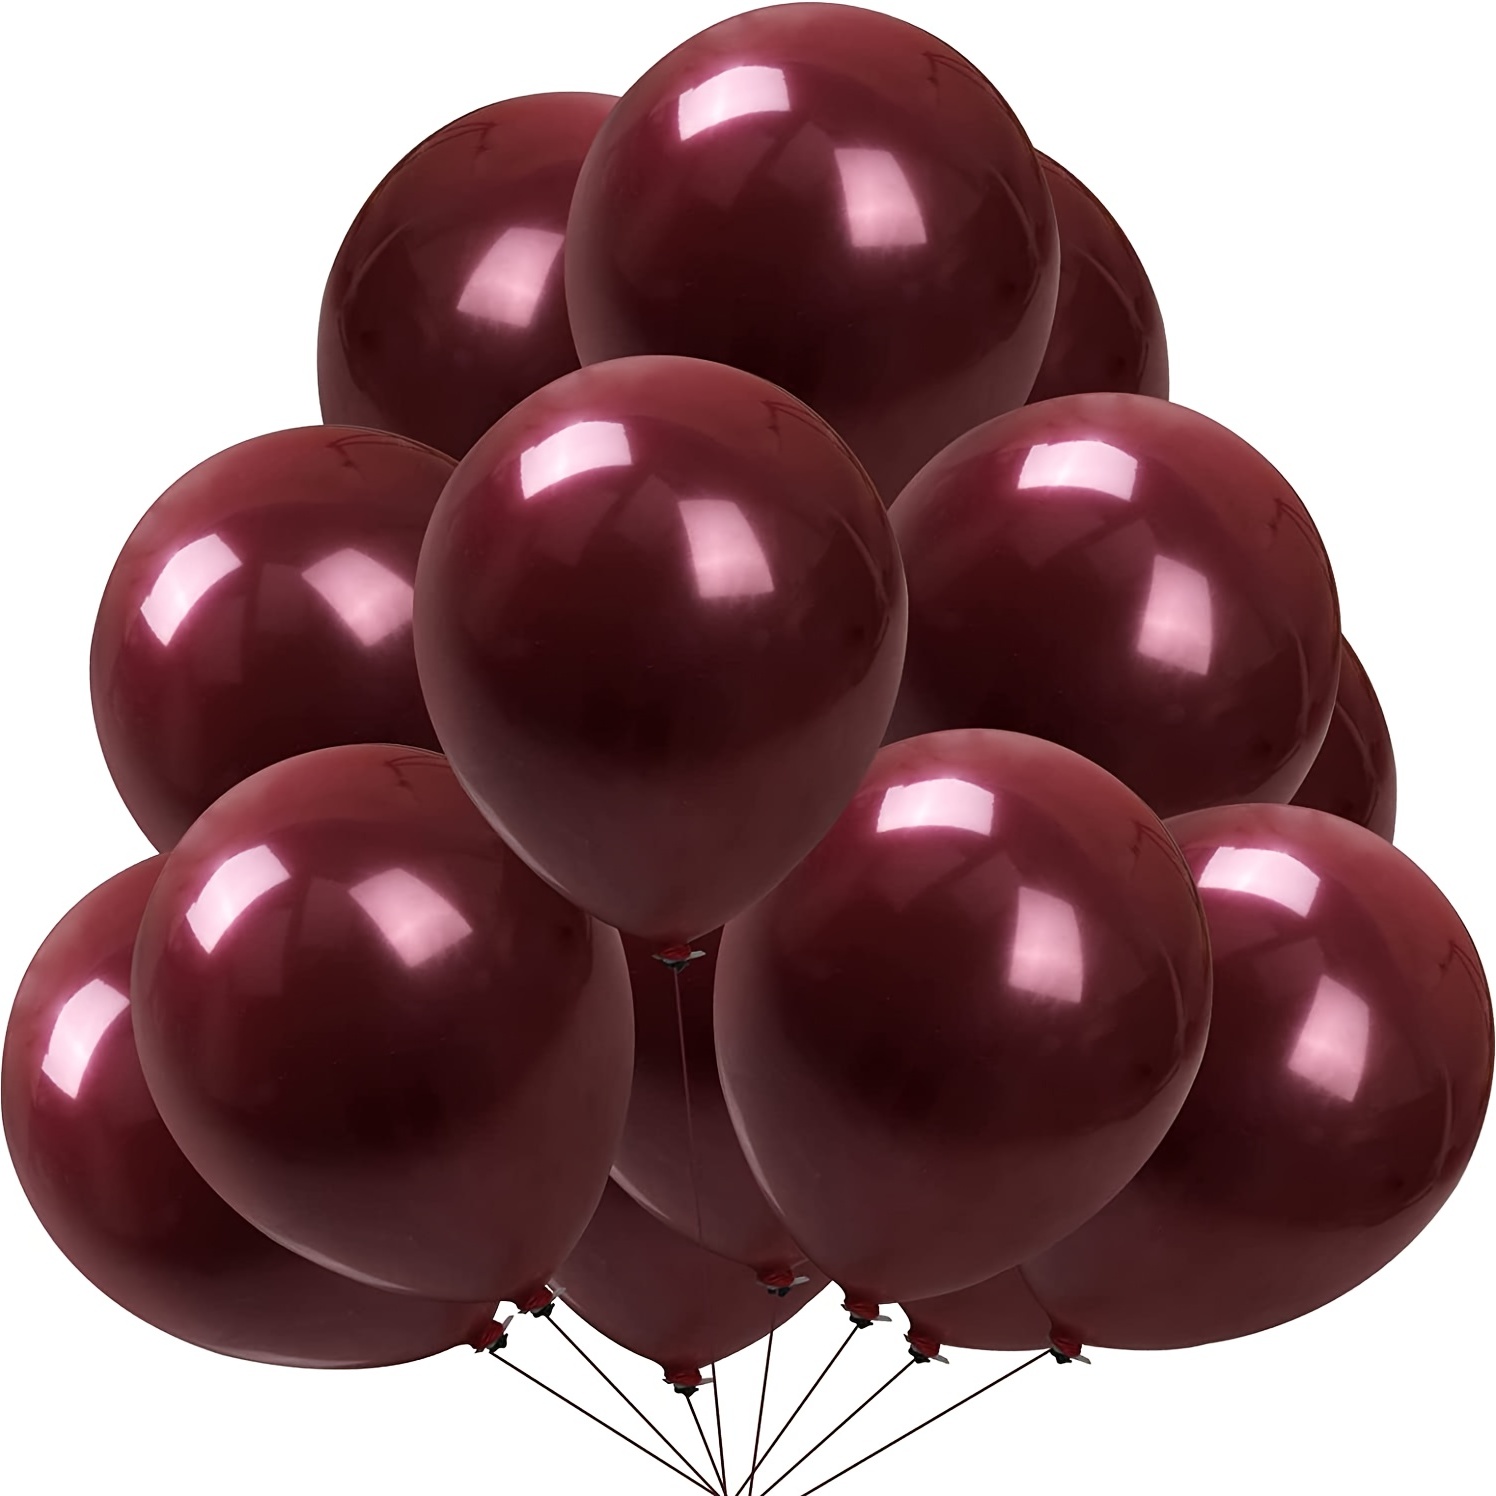 50pcs palloncini rosso bordeaux, palloncini rosso vino da 12 pollici, kit  ghirlanda di palloncini bordeaux per